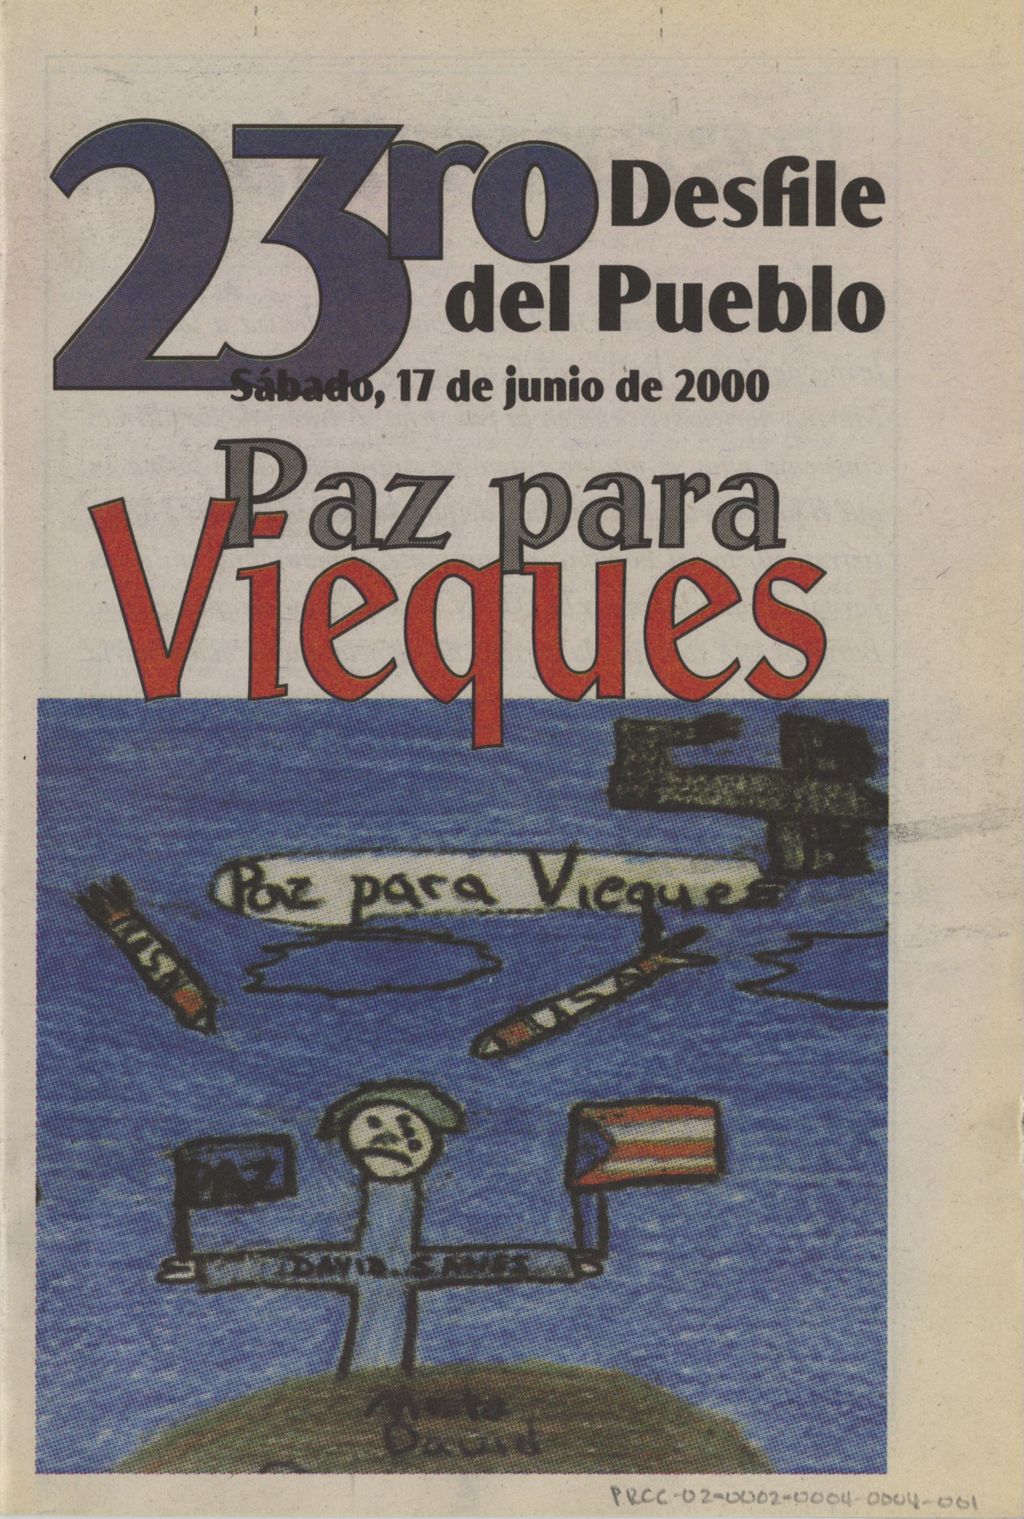 Miniature of 23ro Desfile del Pueblo